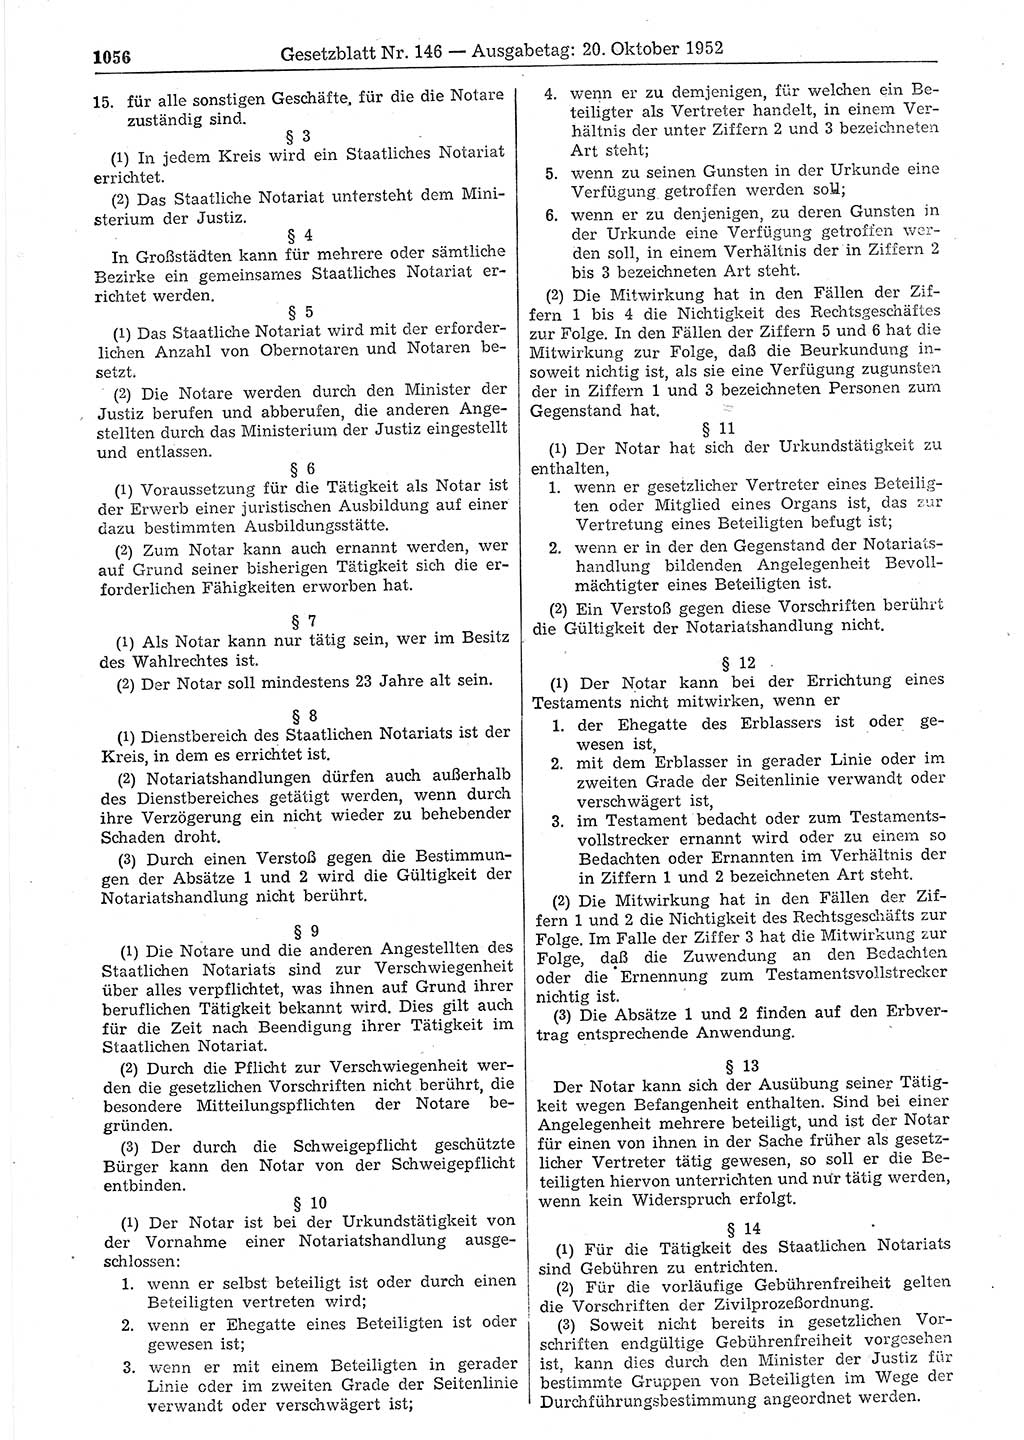 Gesetzblatt (GBl.) der Deutschen Demokratischen Republik (DDR) 1952, Seite 1056 (GBl. DDR 1952, S. 1056)